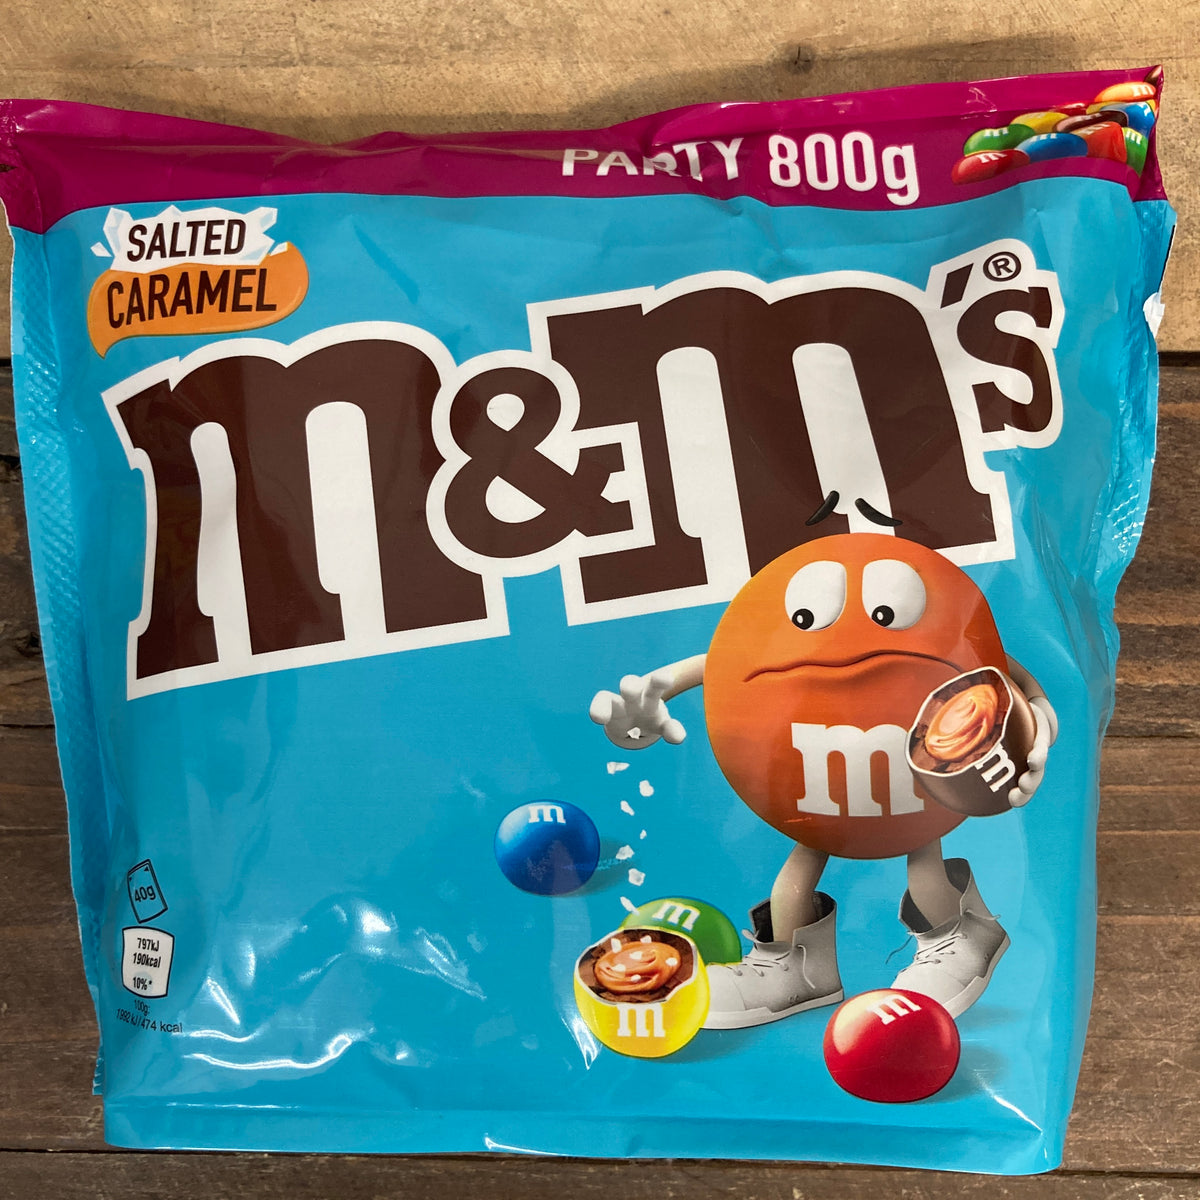 M&M's 1kg Party Mix & Special Crispy M&M's Blue Pack 